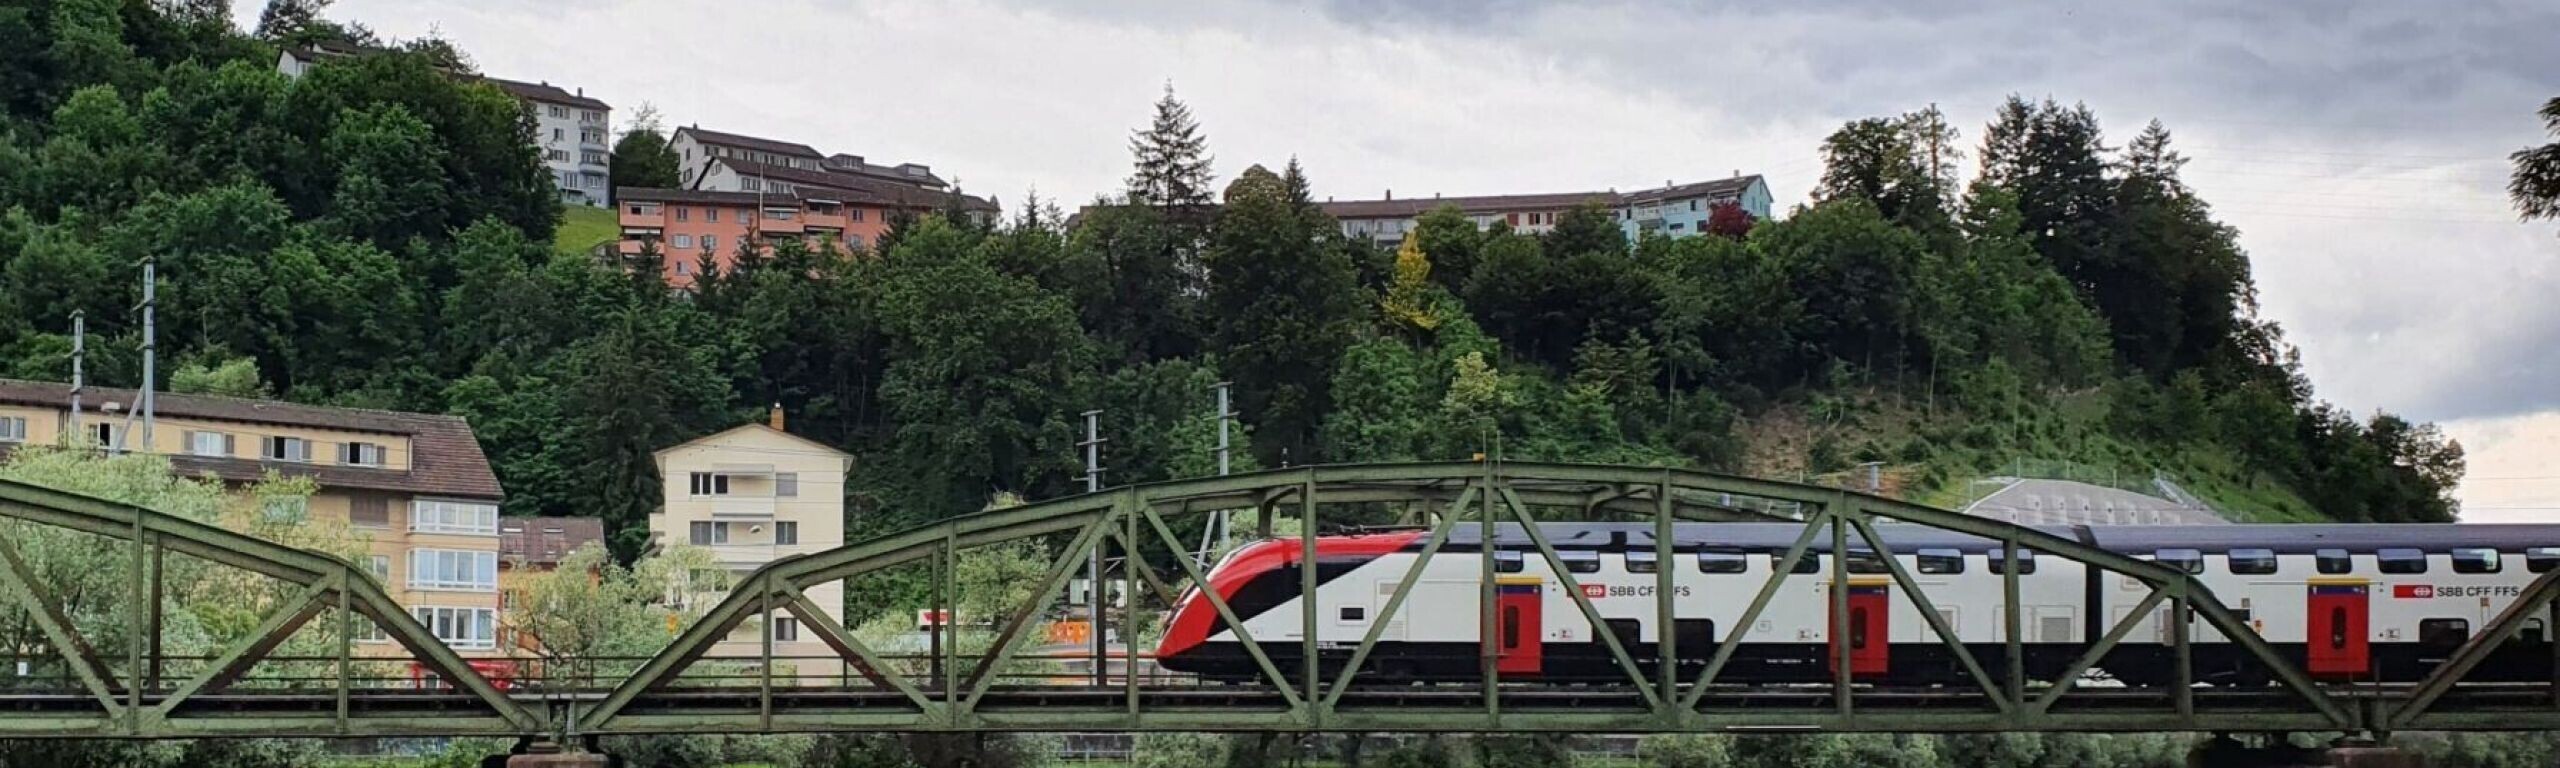 Reussbrücke Fluhmühle in Luzern. Über die denkmalgeschützte Fachwerkbrücke aus Stahl fährt ein moderner Interregio-Zug der SBB.